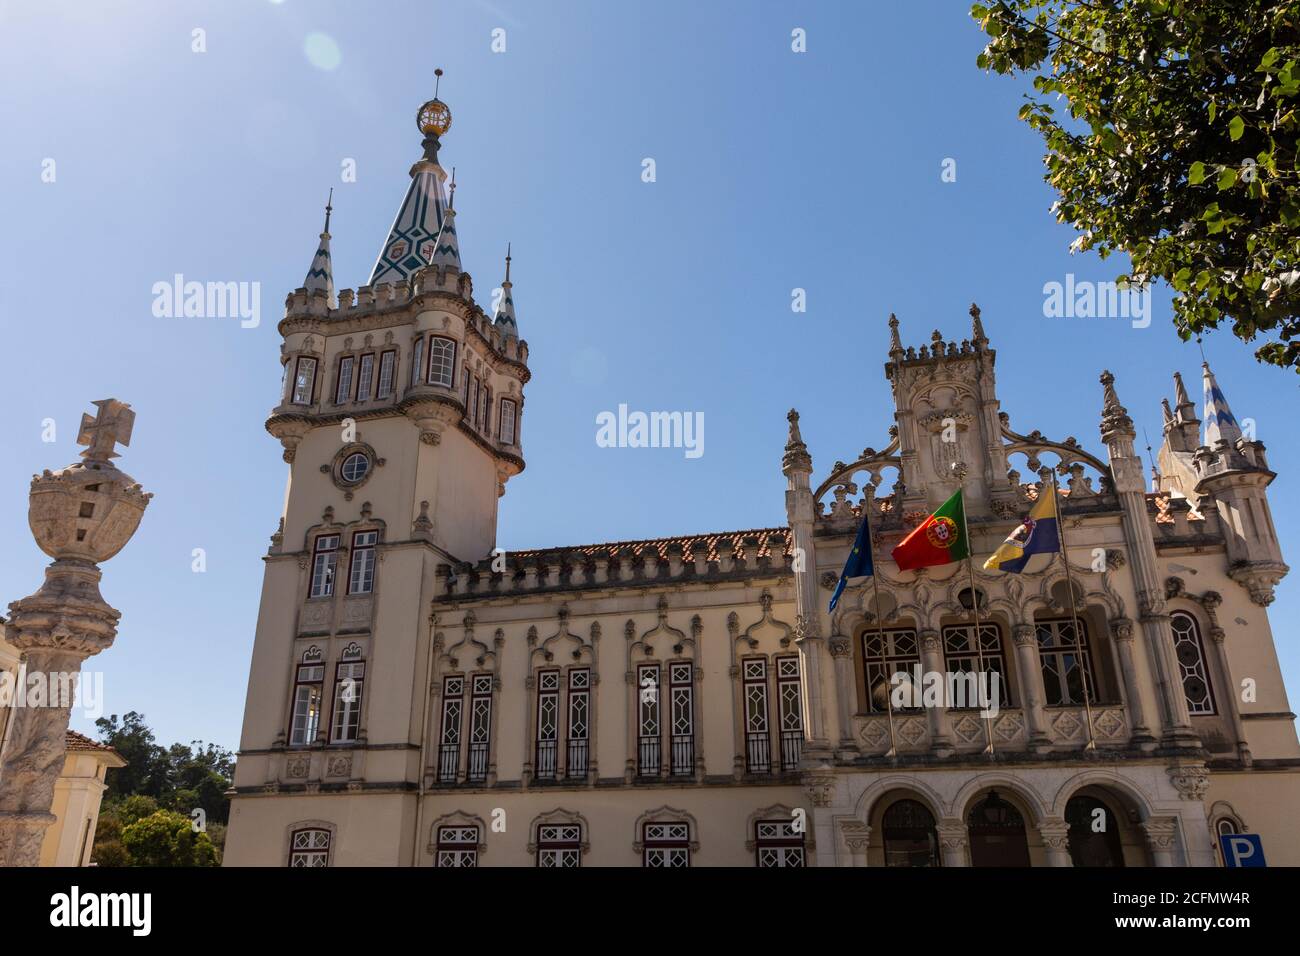 Belle vue sur l'ancien bâtiment historique de l'hôtel de ville et la tour de Sintra, Portugal Banque D'Images